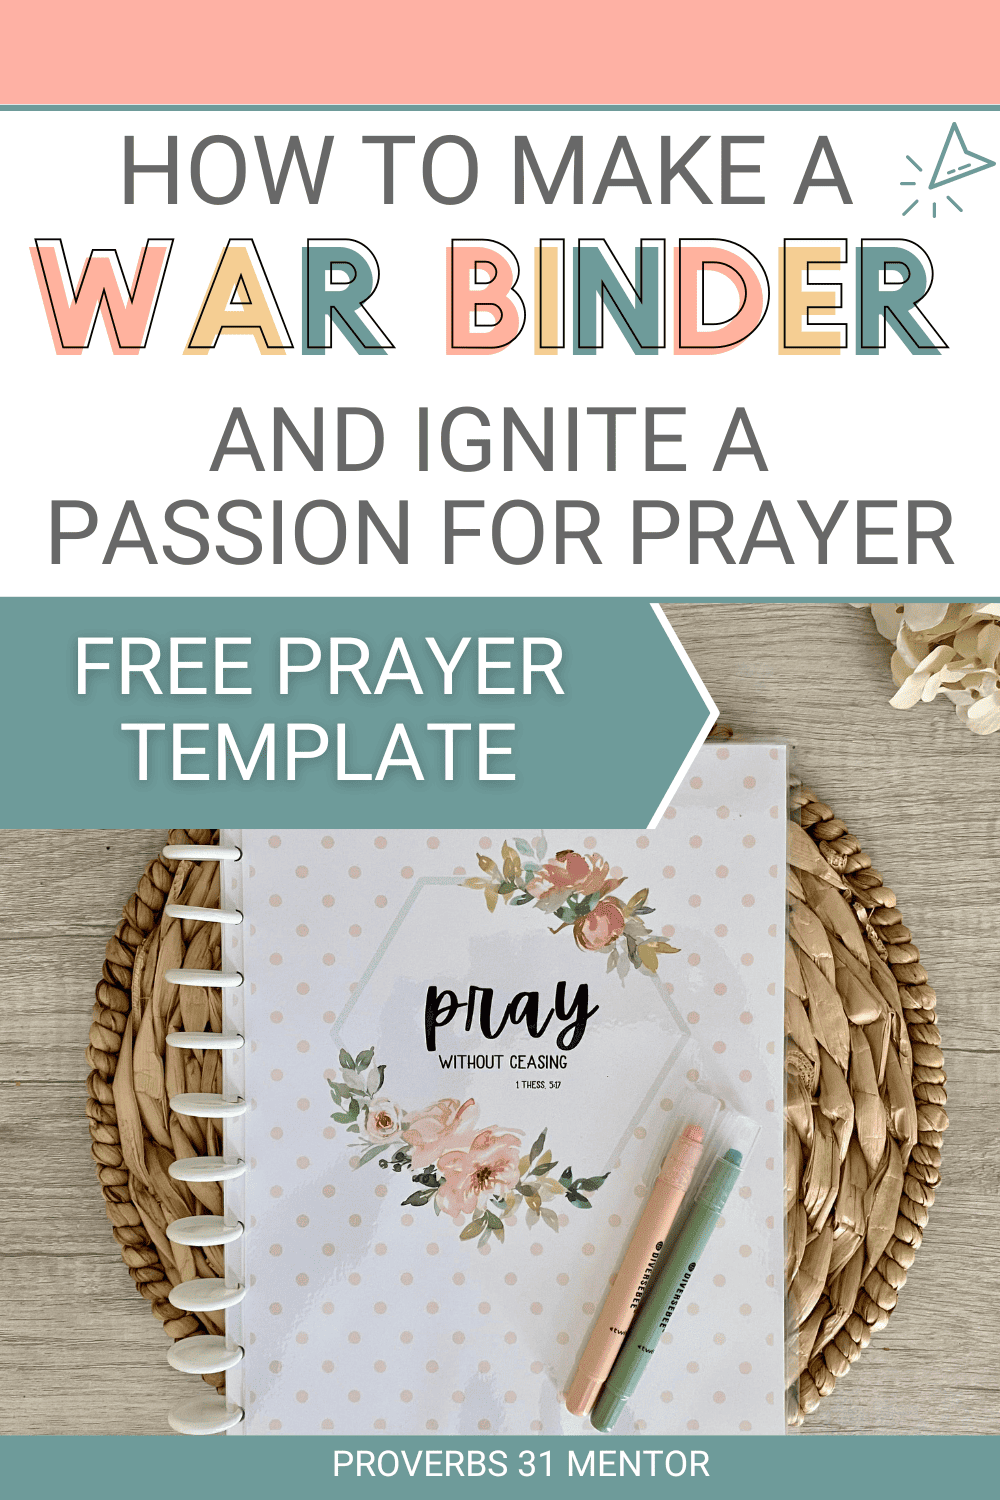 How to Make a War Binder Free Prayer Journal Template Picture- Free Prayer Journal Template